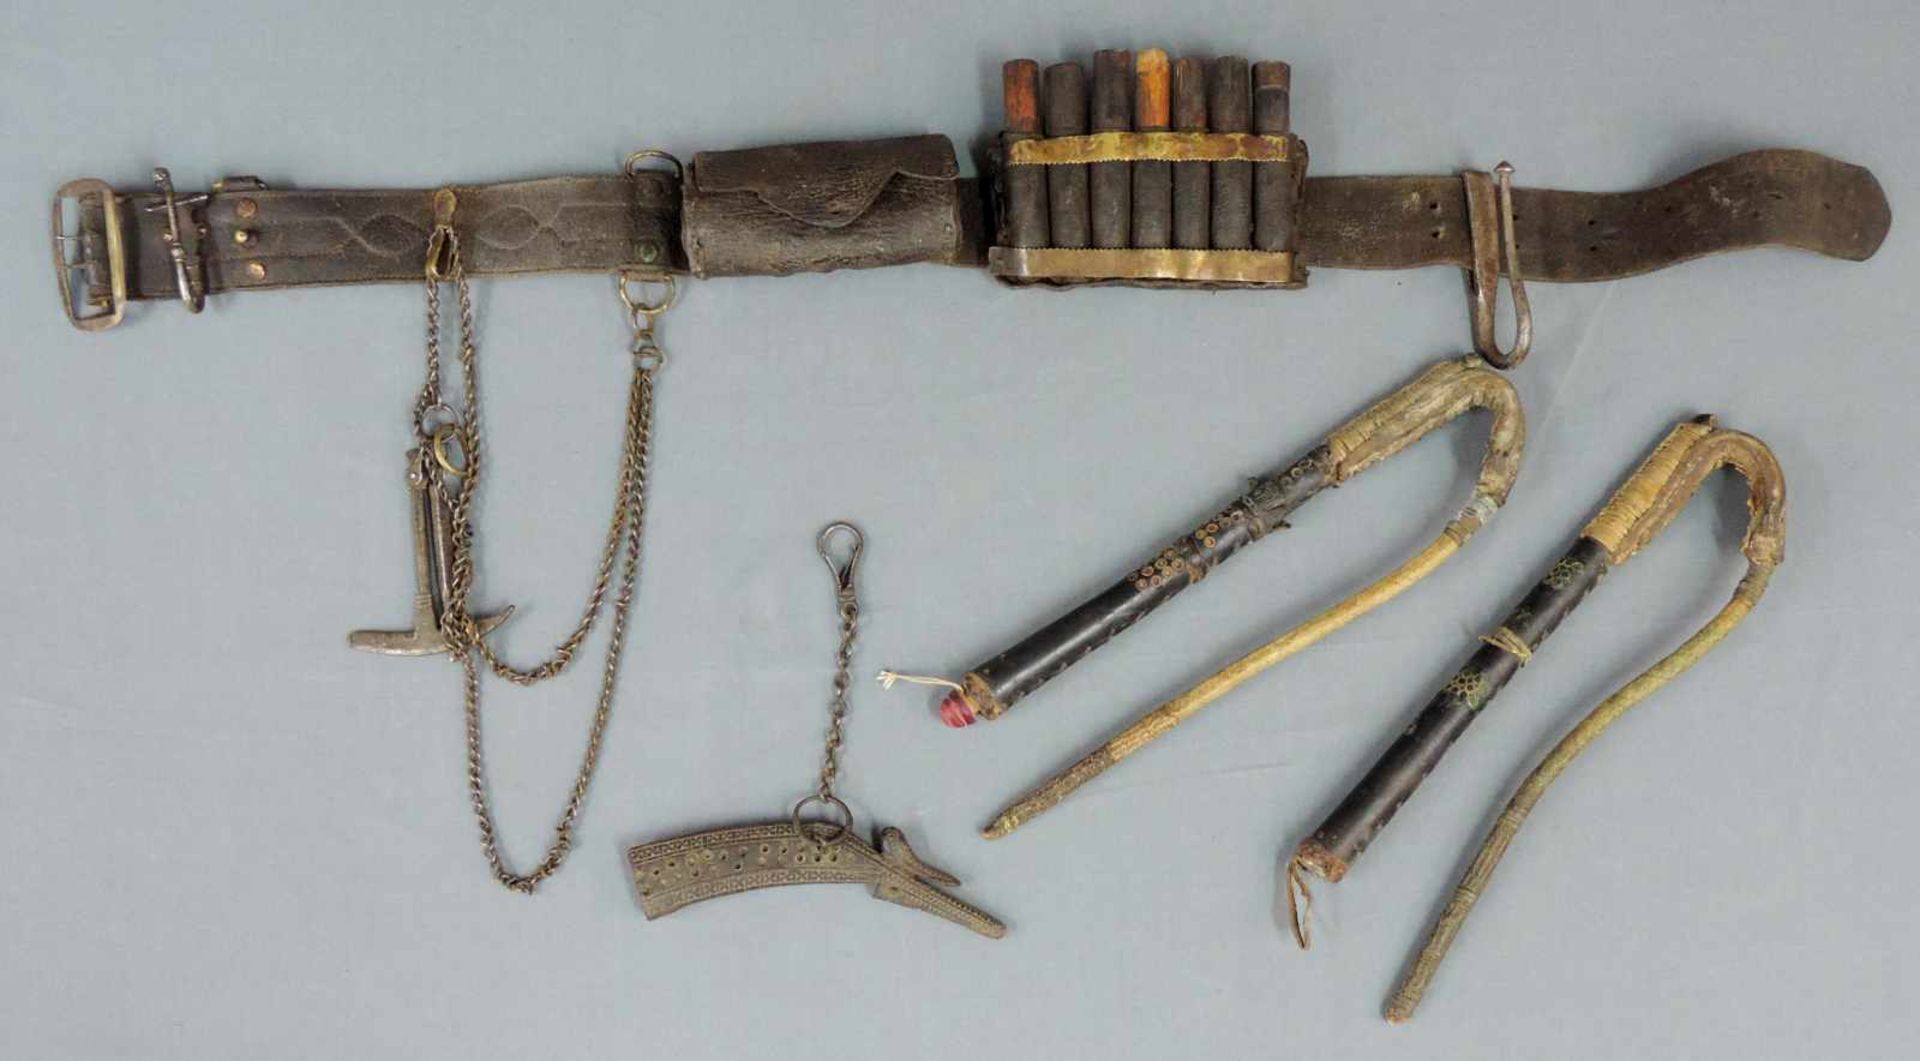 Waffengürtel, Pulverhorn und zwei Pferdepeitschen, verziert. Osmanisch,18.Jahrhundert? Der Gürtel